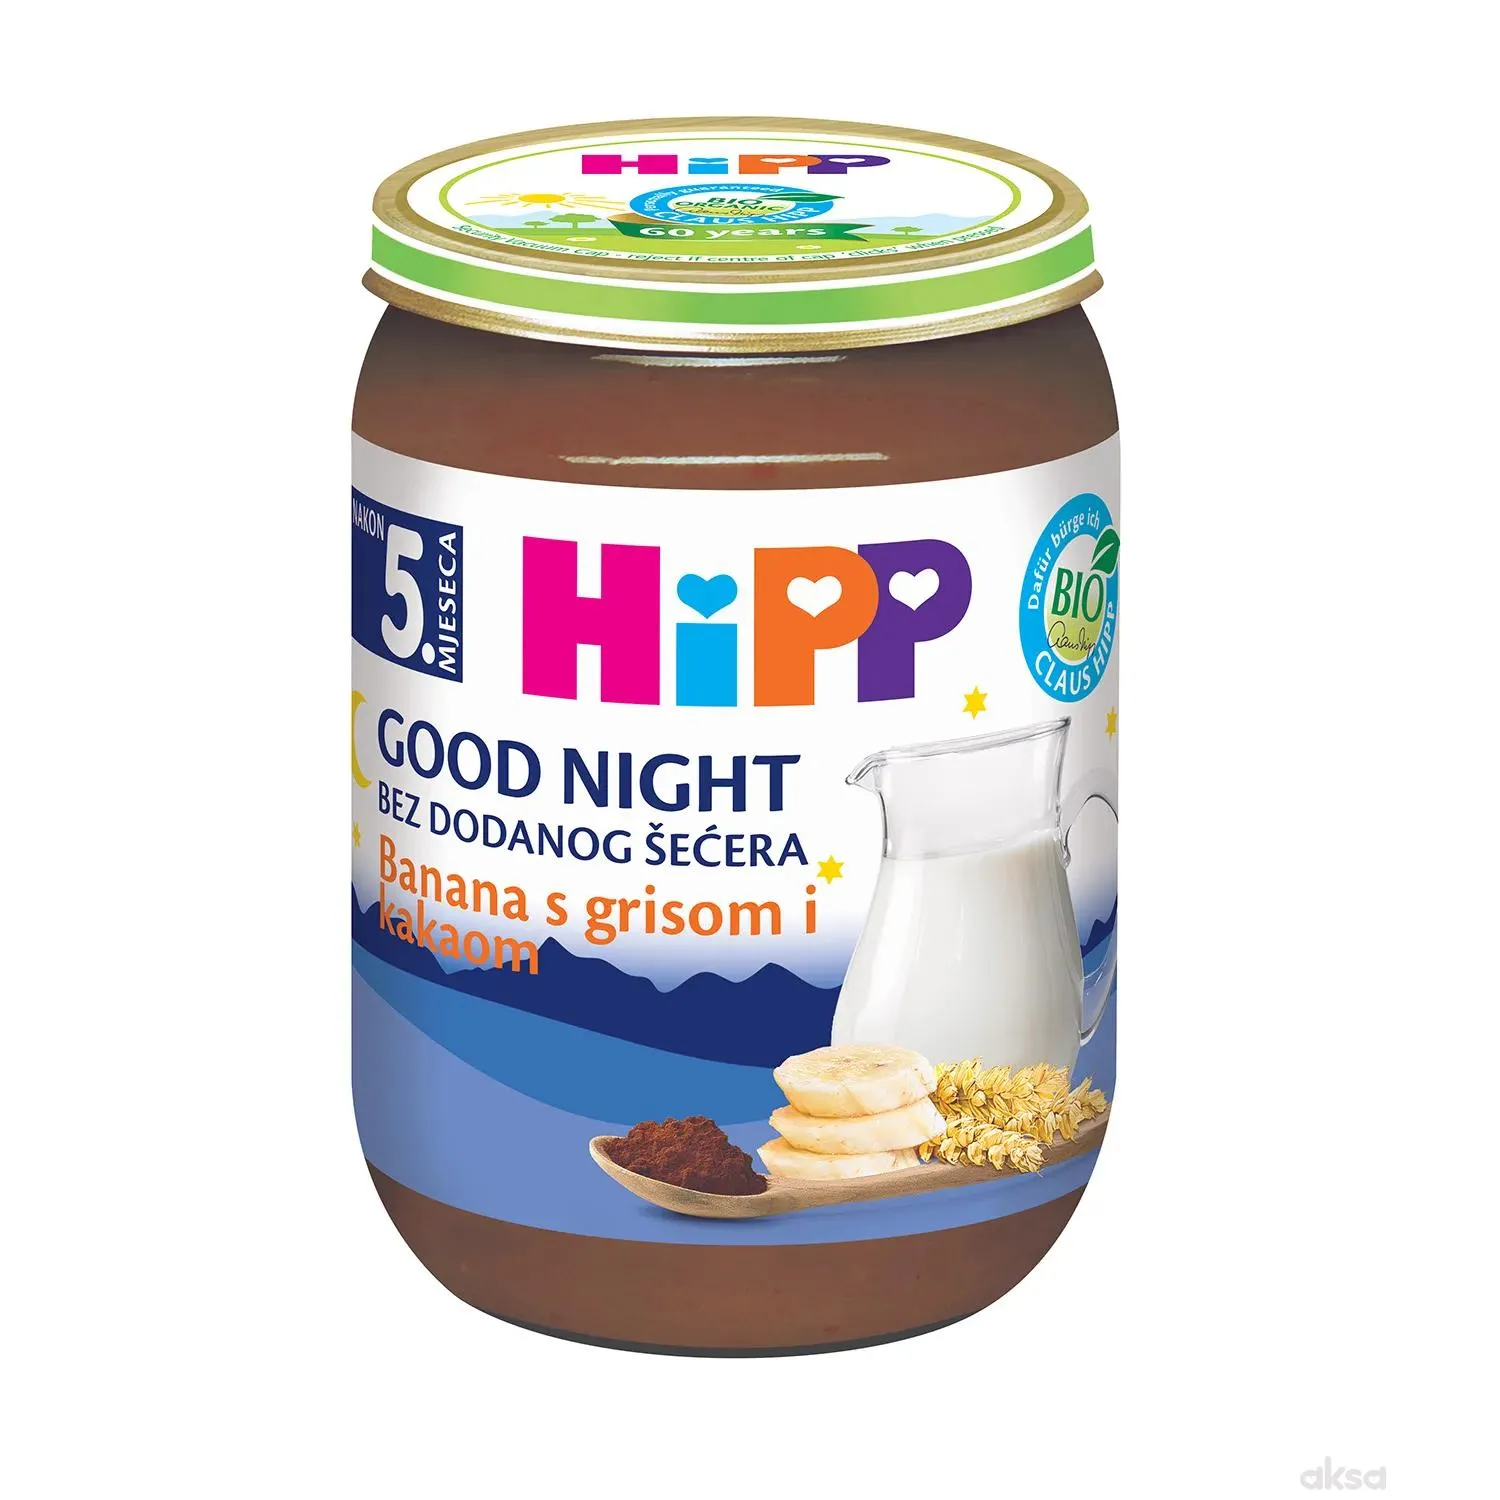 Hipp kašica za l. noć banana, griz i kakao 190g 